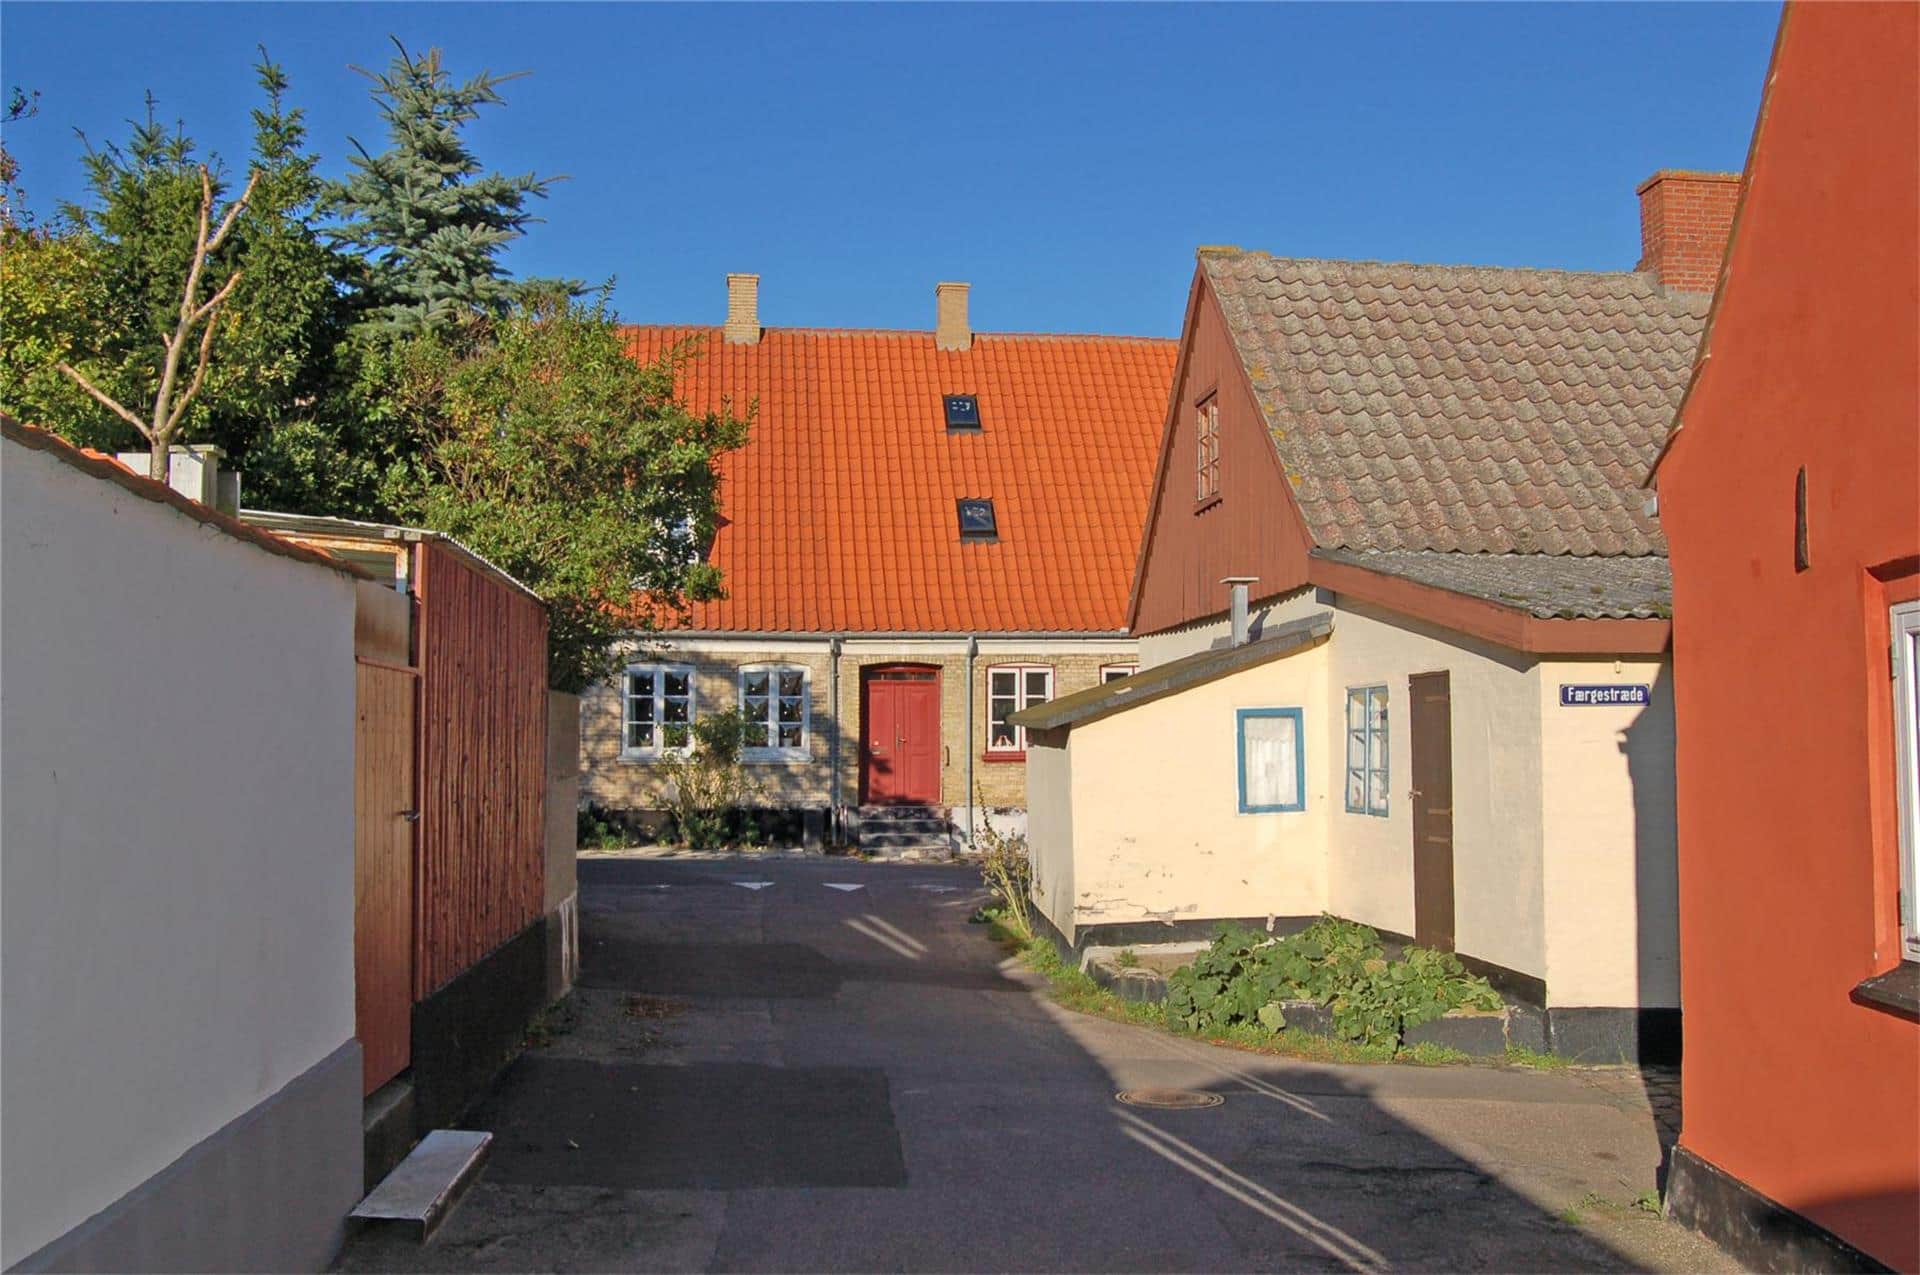 Image 0-3 Holiday-home M70170, Færgestræde 61, DK - 5960 Marstal